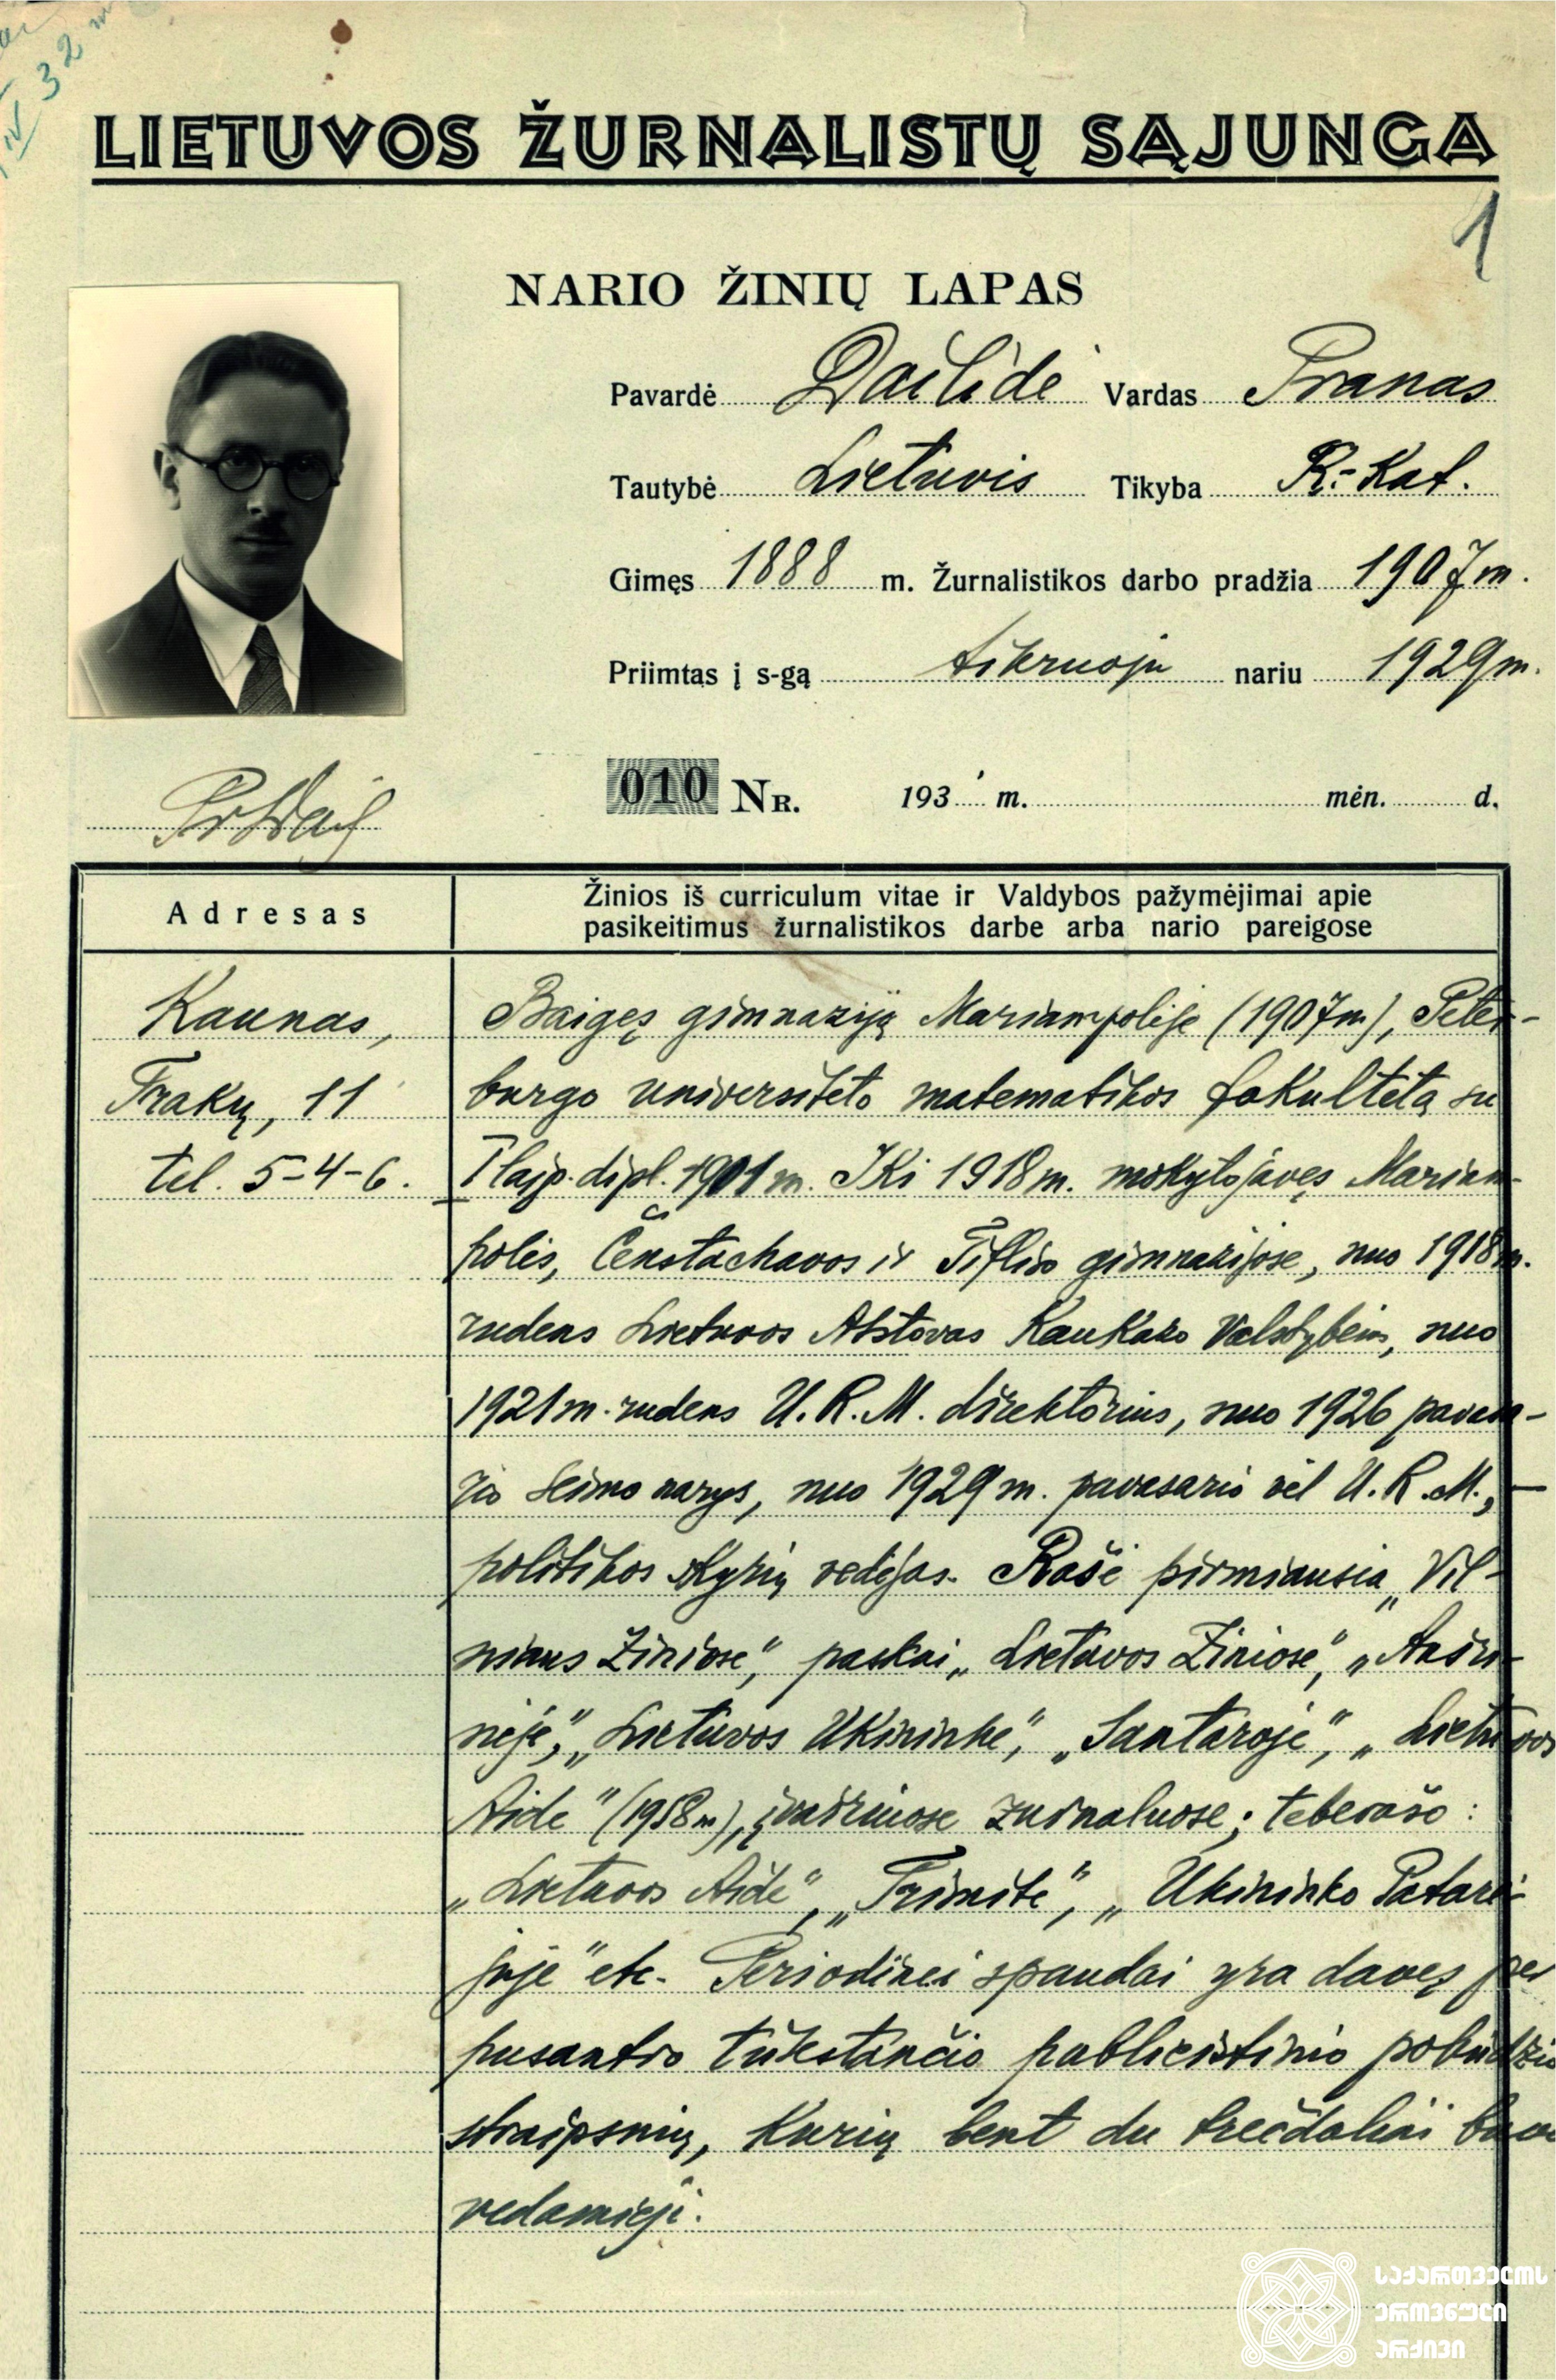 ლიეტუველ ჟურნალისტთა კავშირის წევრის, პრანას დაილიდეს შესახებ ჩანაწერები, რომელშიც მითითებულია, რომ 1918-1921 წლებში ის იყო ლიეტუვის რესპუბლიკის წარმომადგენელი ამიერკავკასიის სახელმწიფოებში. <br>
Record about Pranas Dailidé, member of the Lithuanian Journalist’s Association, containing information that he served as the Representative of the Republic of Lithuania to Transcaucasia in 1918-1921.